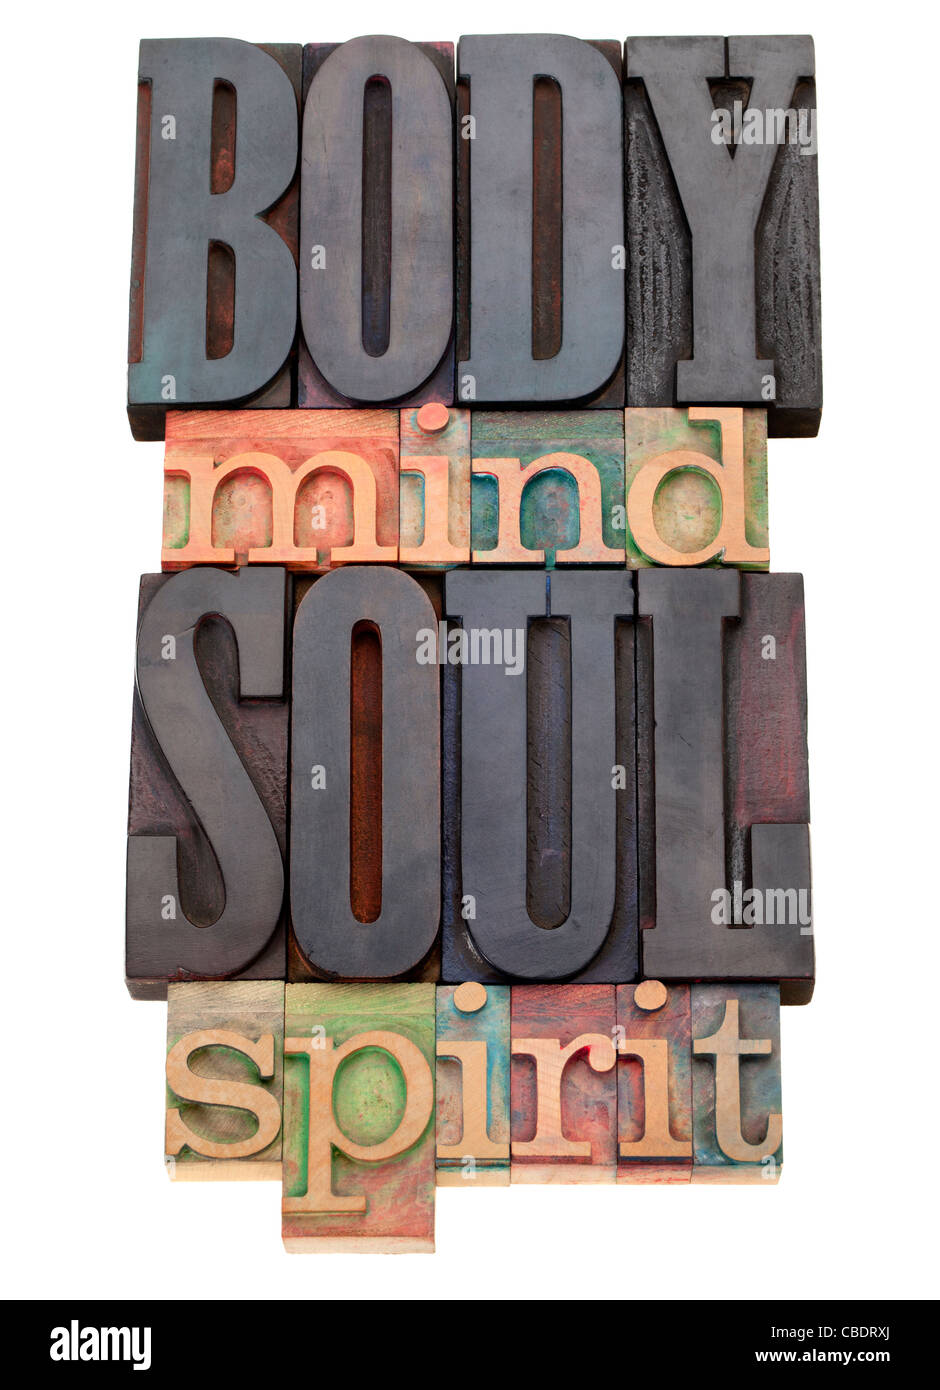 Cuerpo, Mente, alma, espíritu, aislado palabra abstracta en bloques de madera vintage tipografía Foto de stock